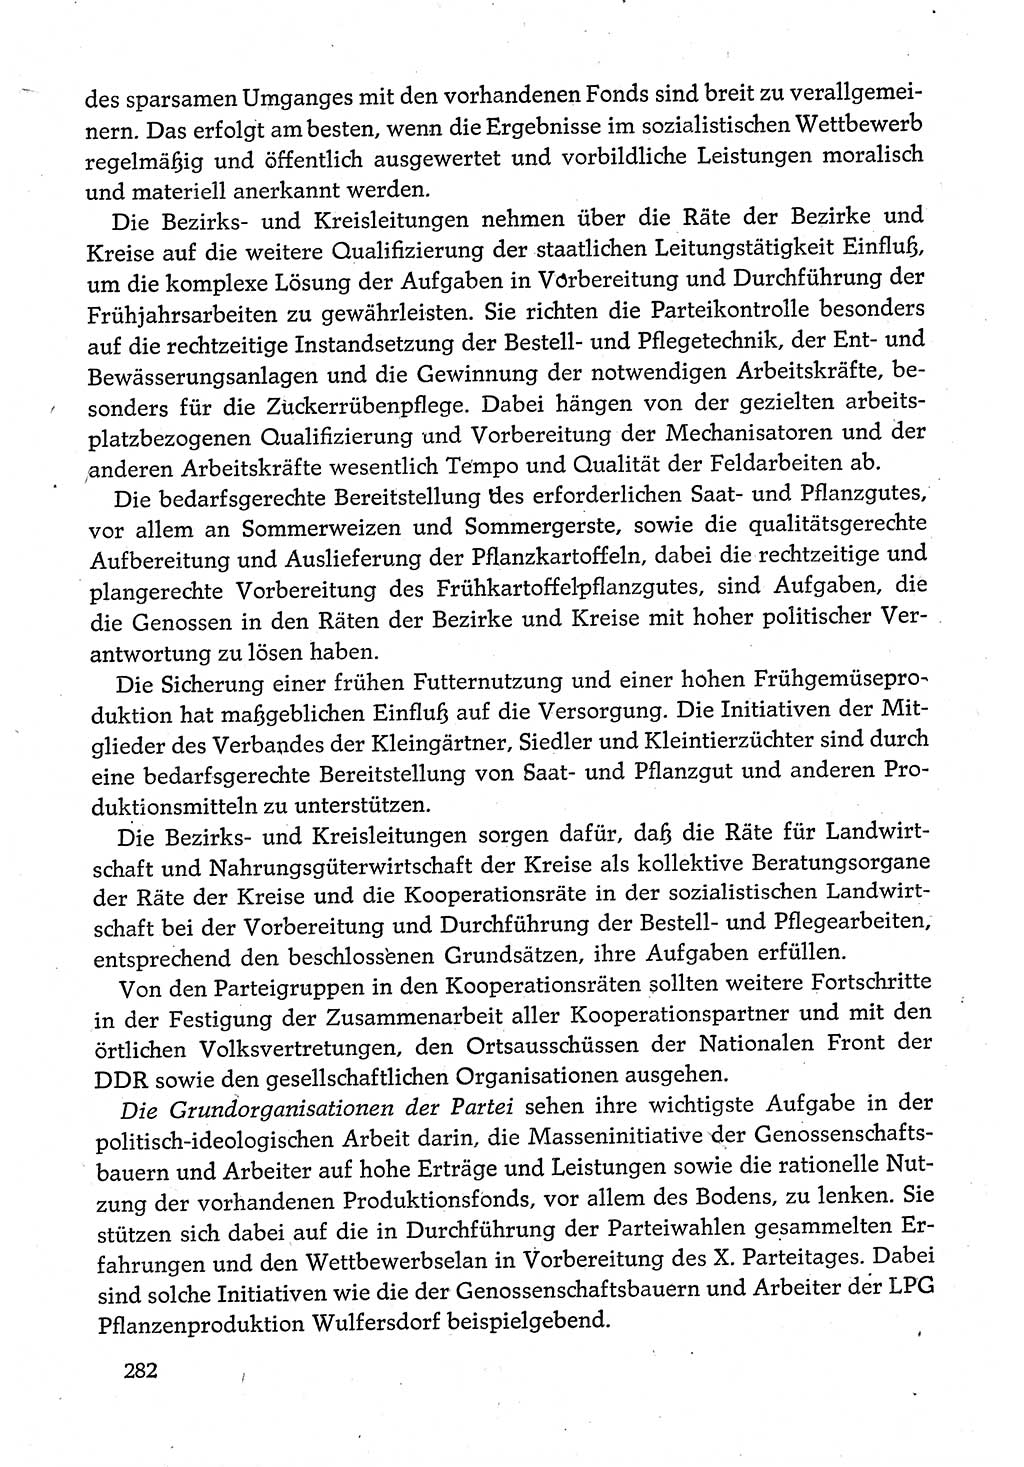 Dokumente der Sozialistischen Einheitspartei Deutschlands (SED) [Deutsche Demokratische Republik (DDR)] 1980-1981, Seite 282 (Dok. SED DDR 1980-1981, S. 282)